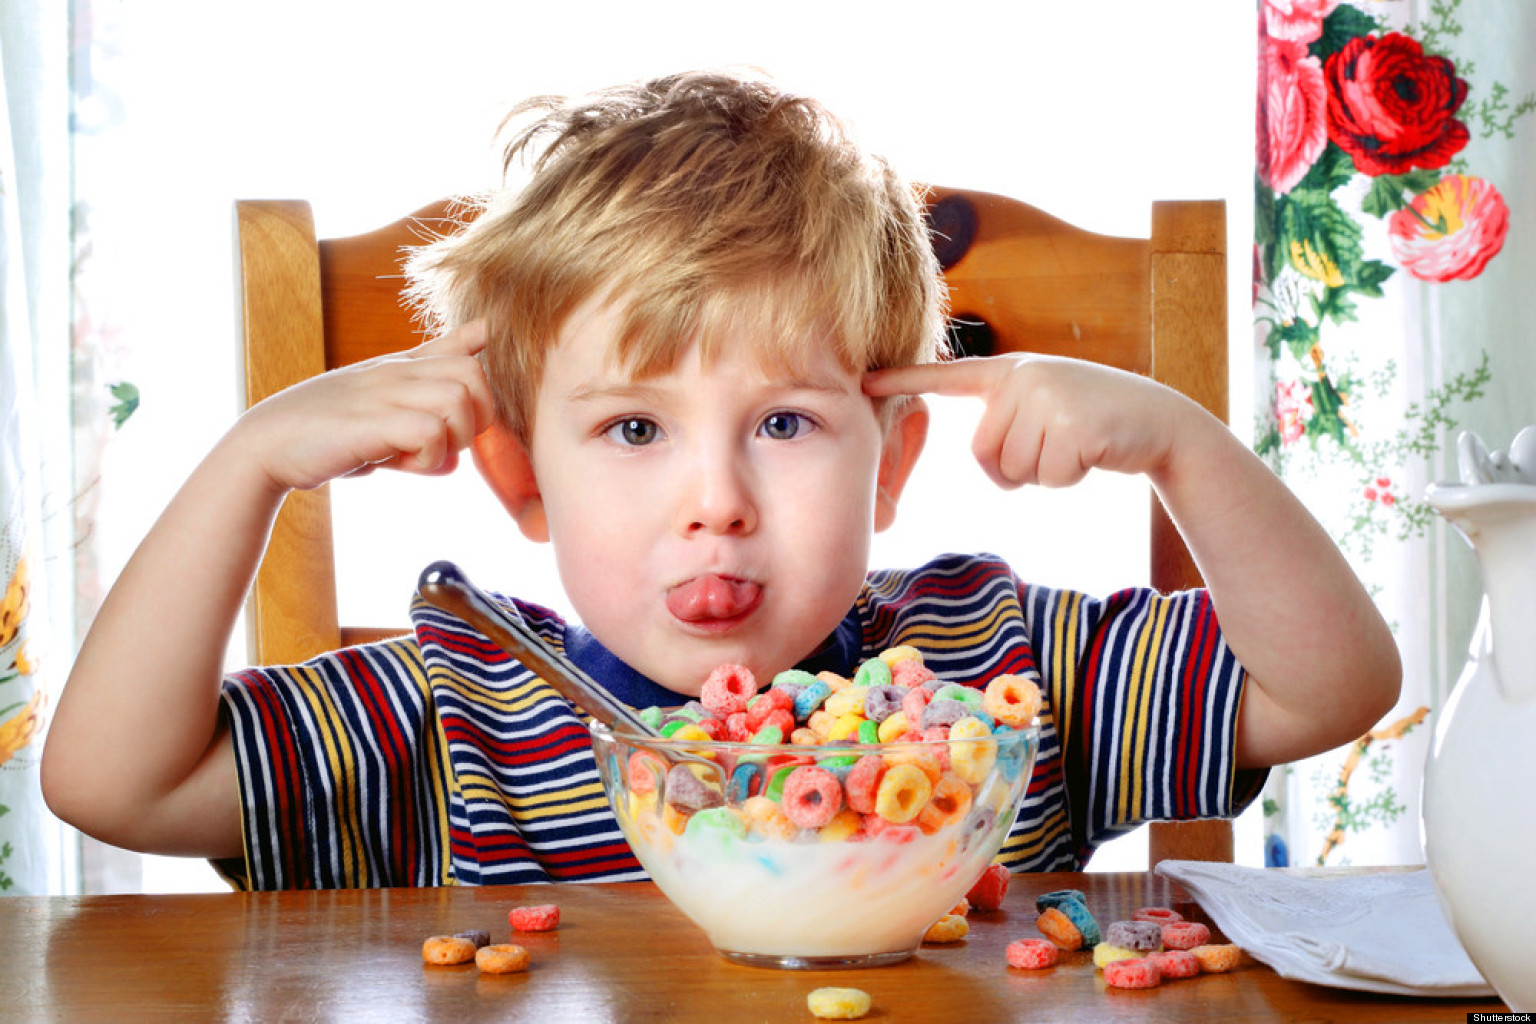 السكر عند الأطفال: الكميات الموصى بها والعواقب وأهم النصائح